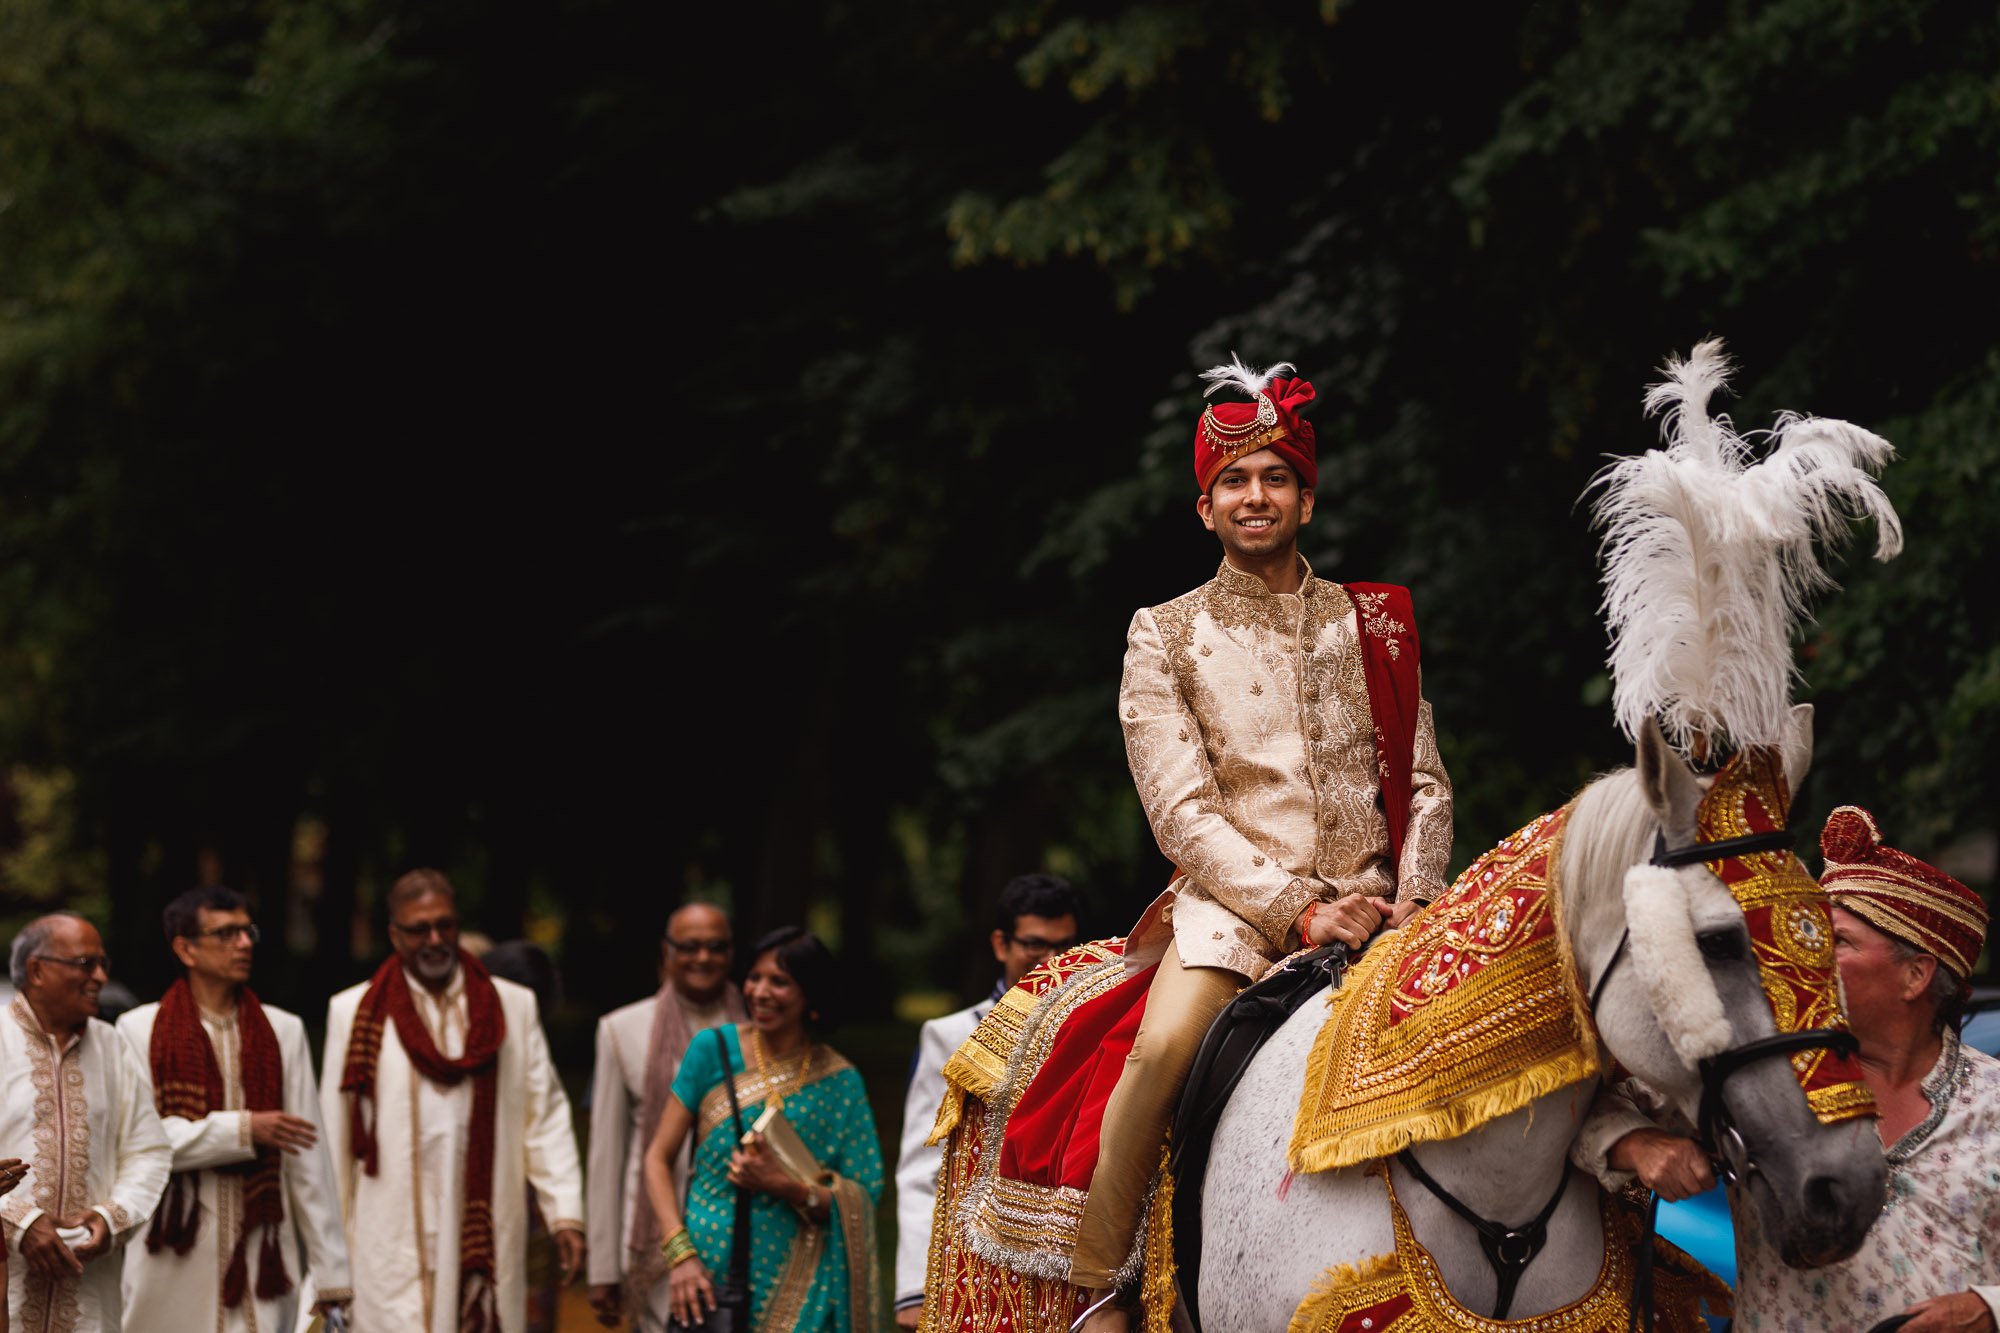 Dunchurch Park Hotel, Asian wedding photographer Midlands, groom arrival on horse